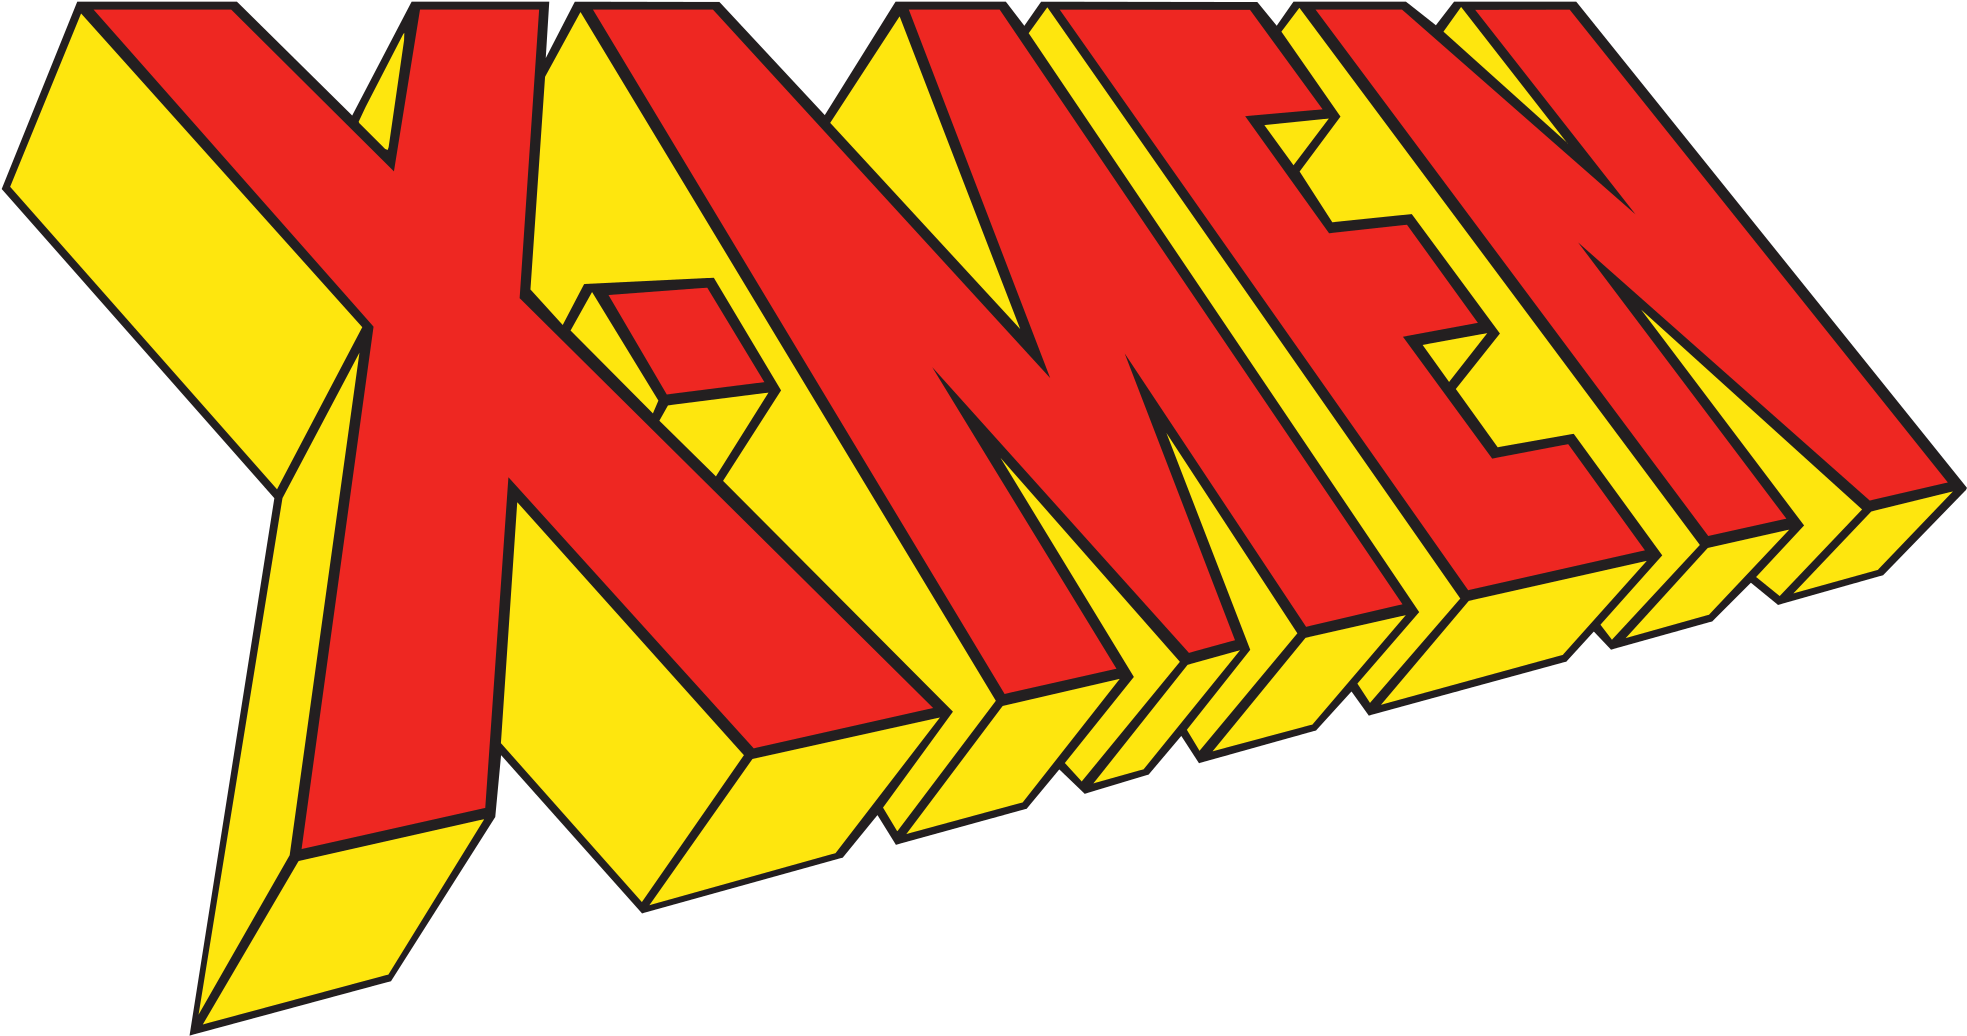 Comics - X-men Wallpaper - Original X Men Lineup (2000x1069)